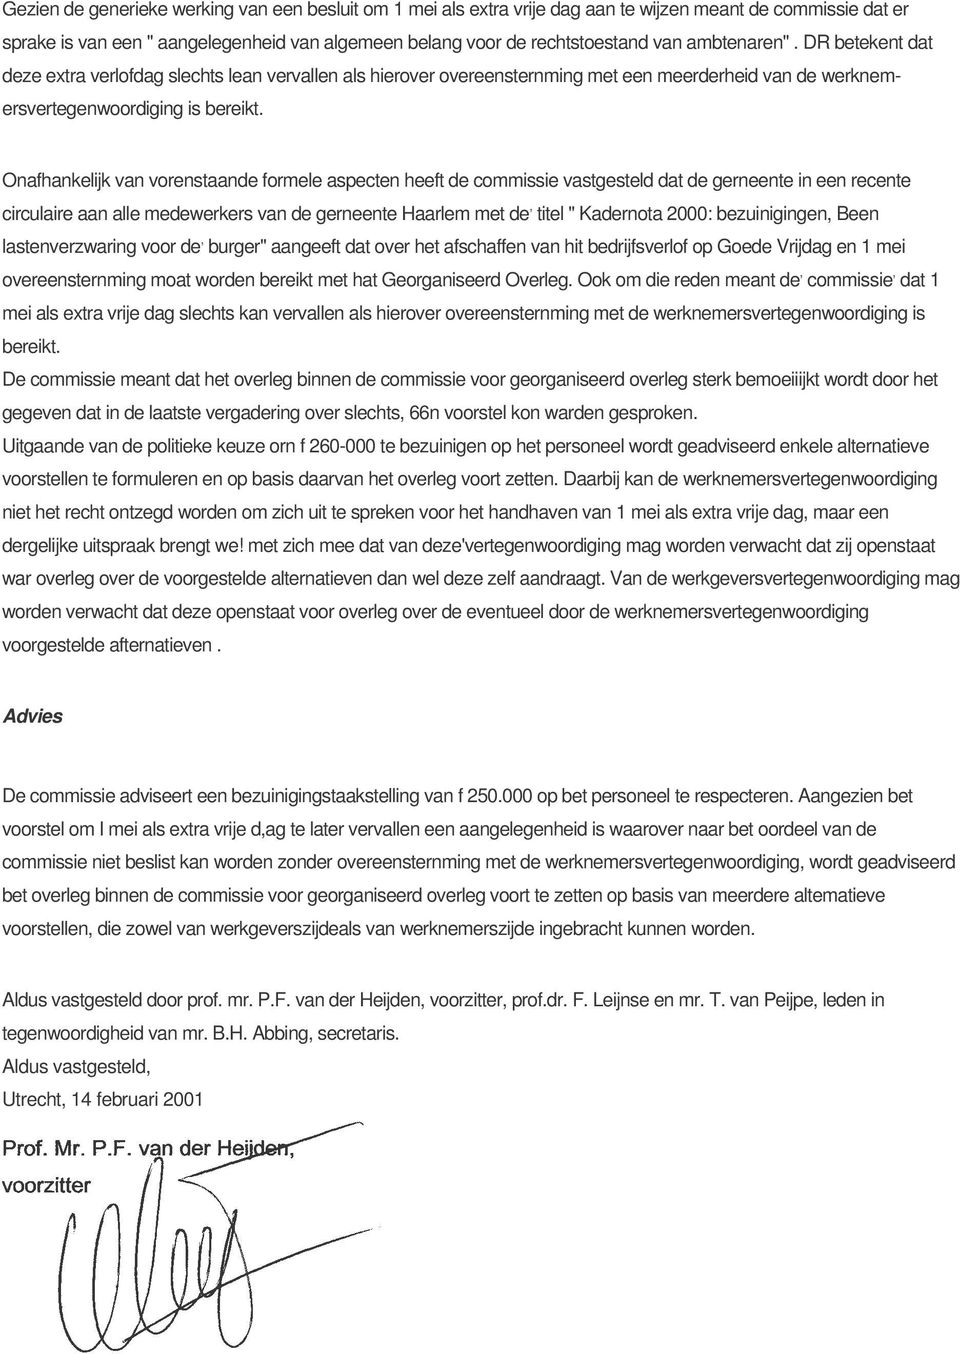 Onafhankelijk van vorenstaande formele aspecten heeft de commissie vastgesteld dat de gerneente in een recente circulaire aan alle medewerkers van de gerneente Haarlem met de, titel " Kadernota 2000: